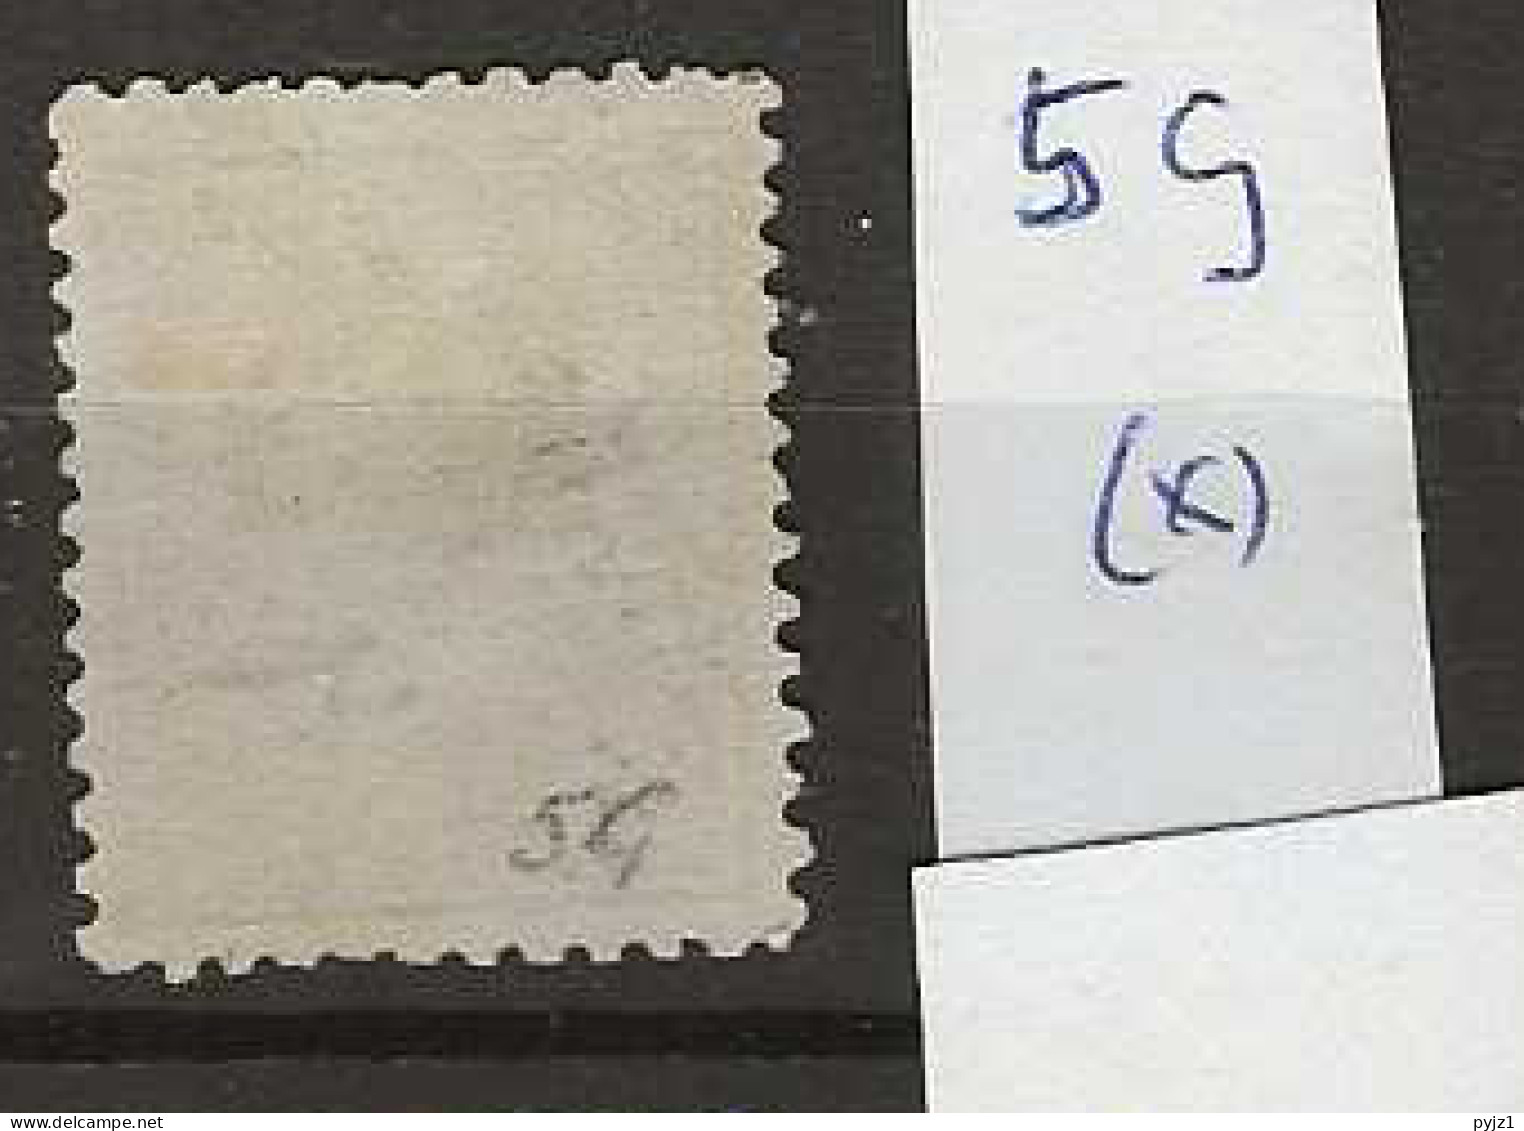 1870 MNG Nederlands Indië NVPH  5G Perf 11 1/2 : 12 Gr. G. - Nederlands-Indië